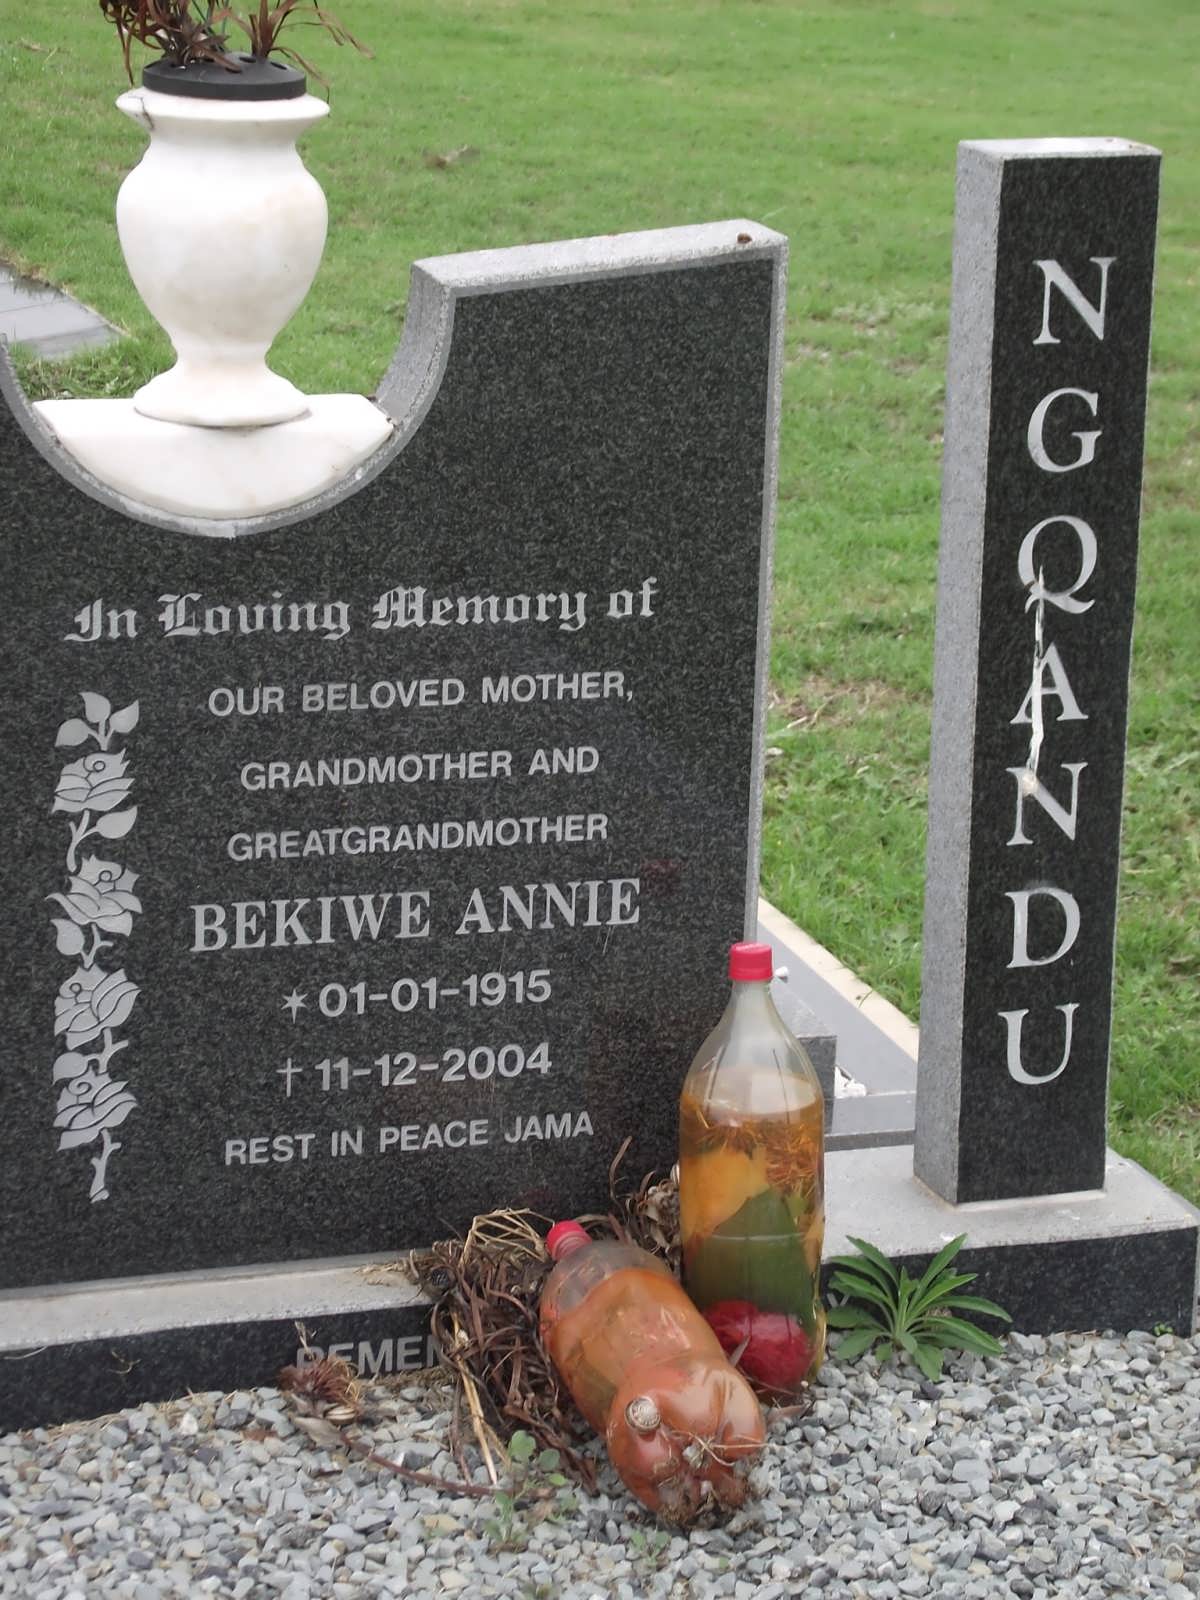 NGQANDU Bekiwe Annie 1915-2004